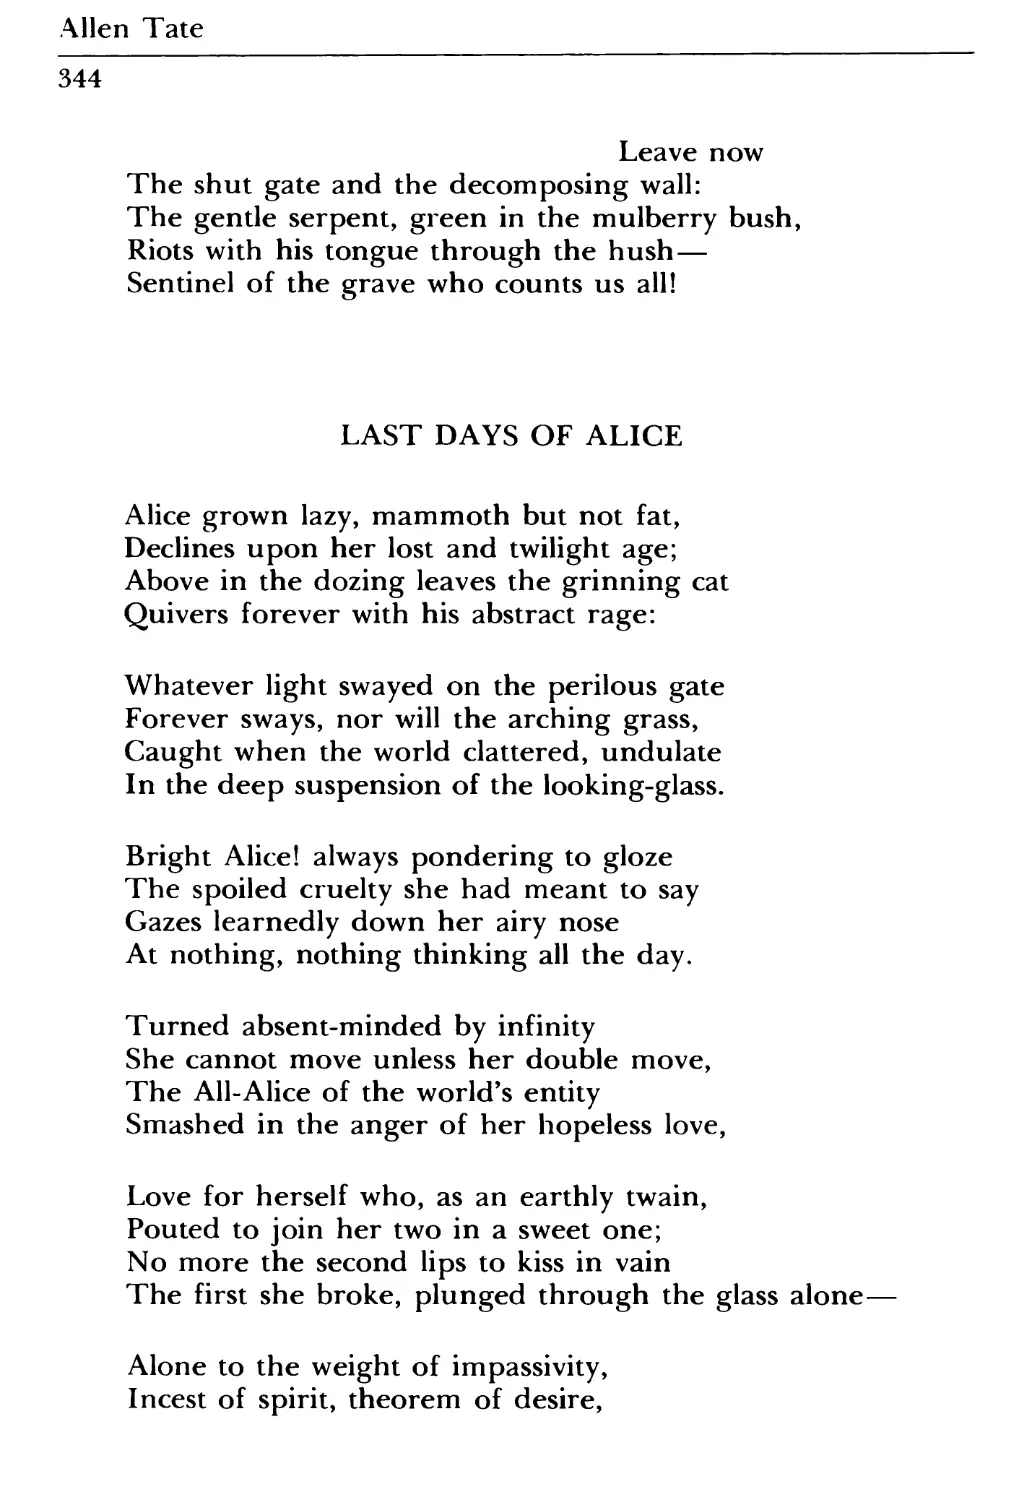 Last Days of Alice